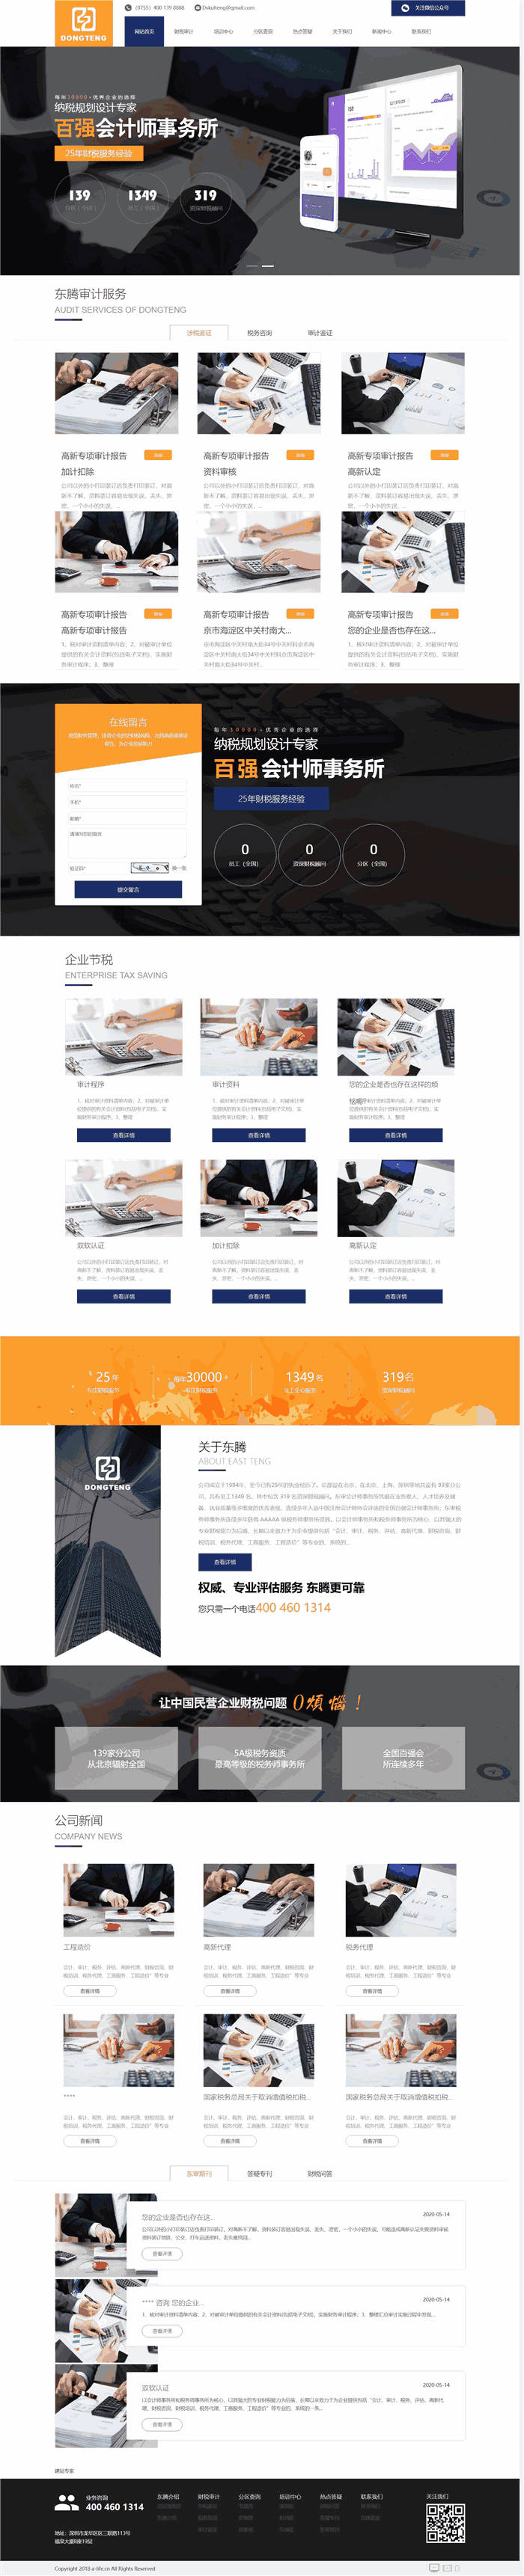 高端大气财税审计会计师事务所网站WordPress模板效果图